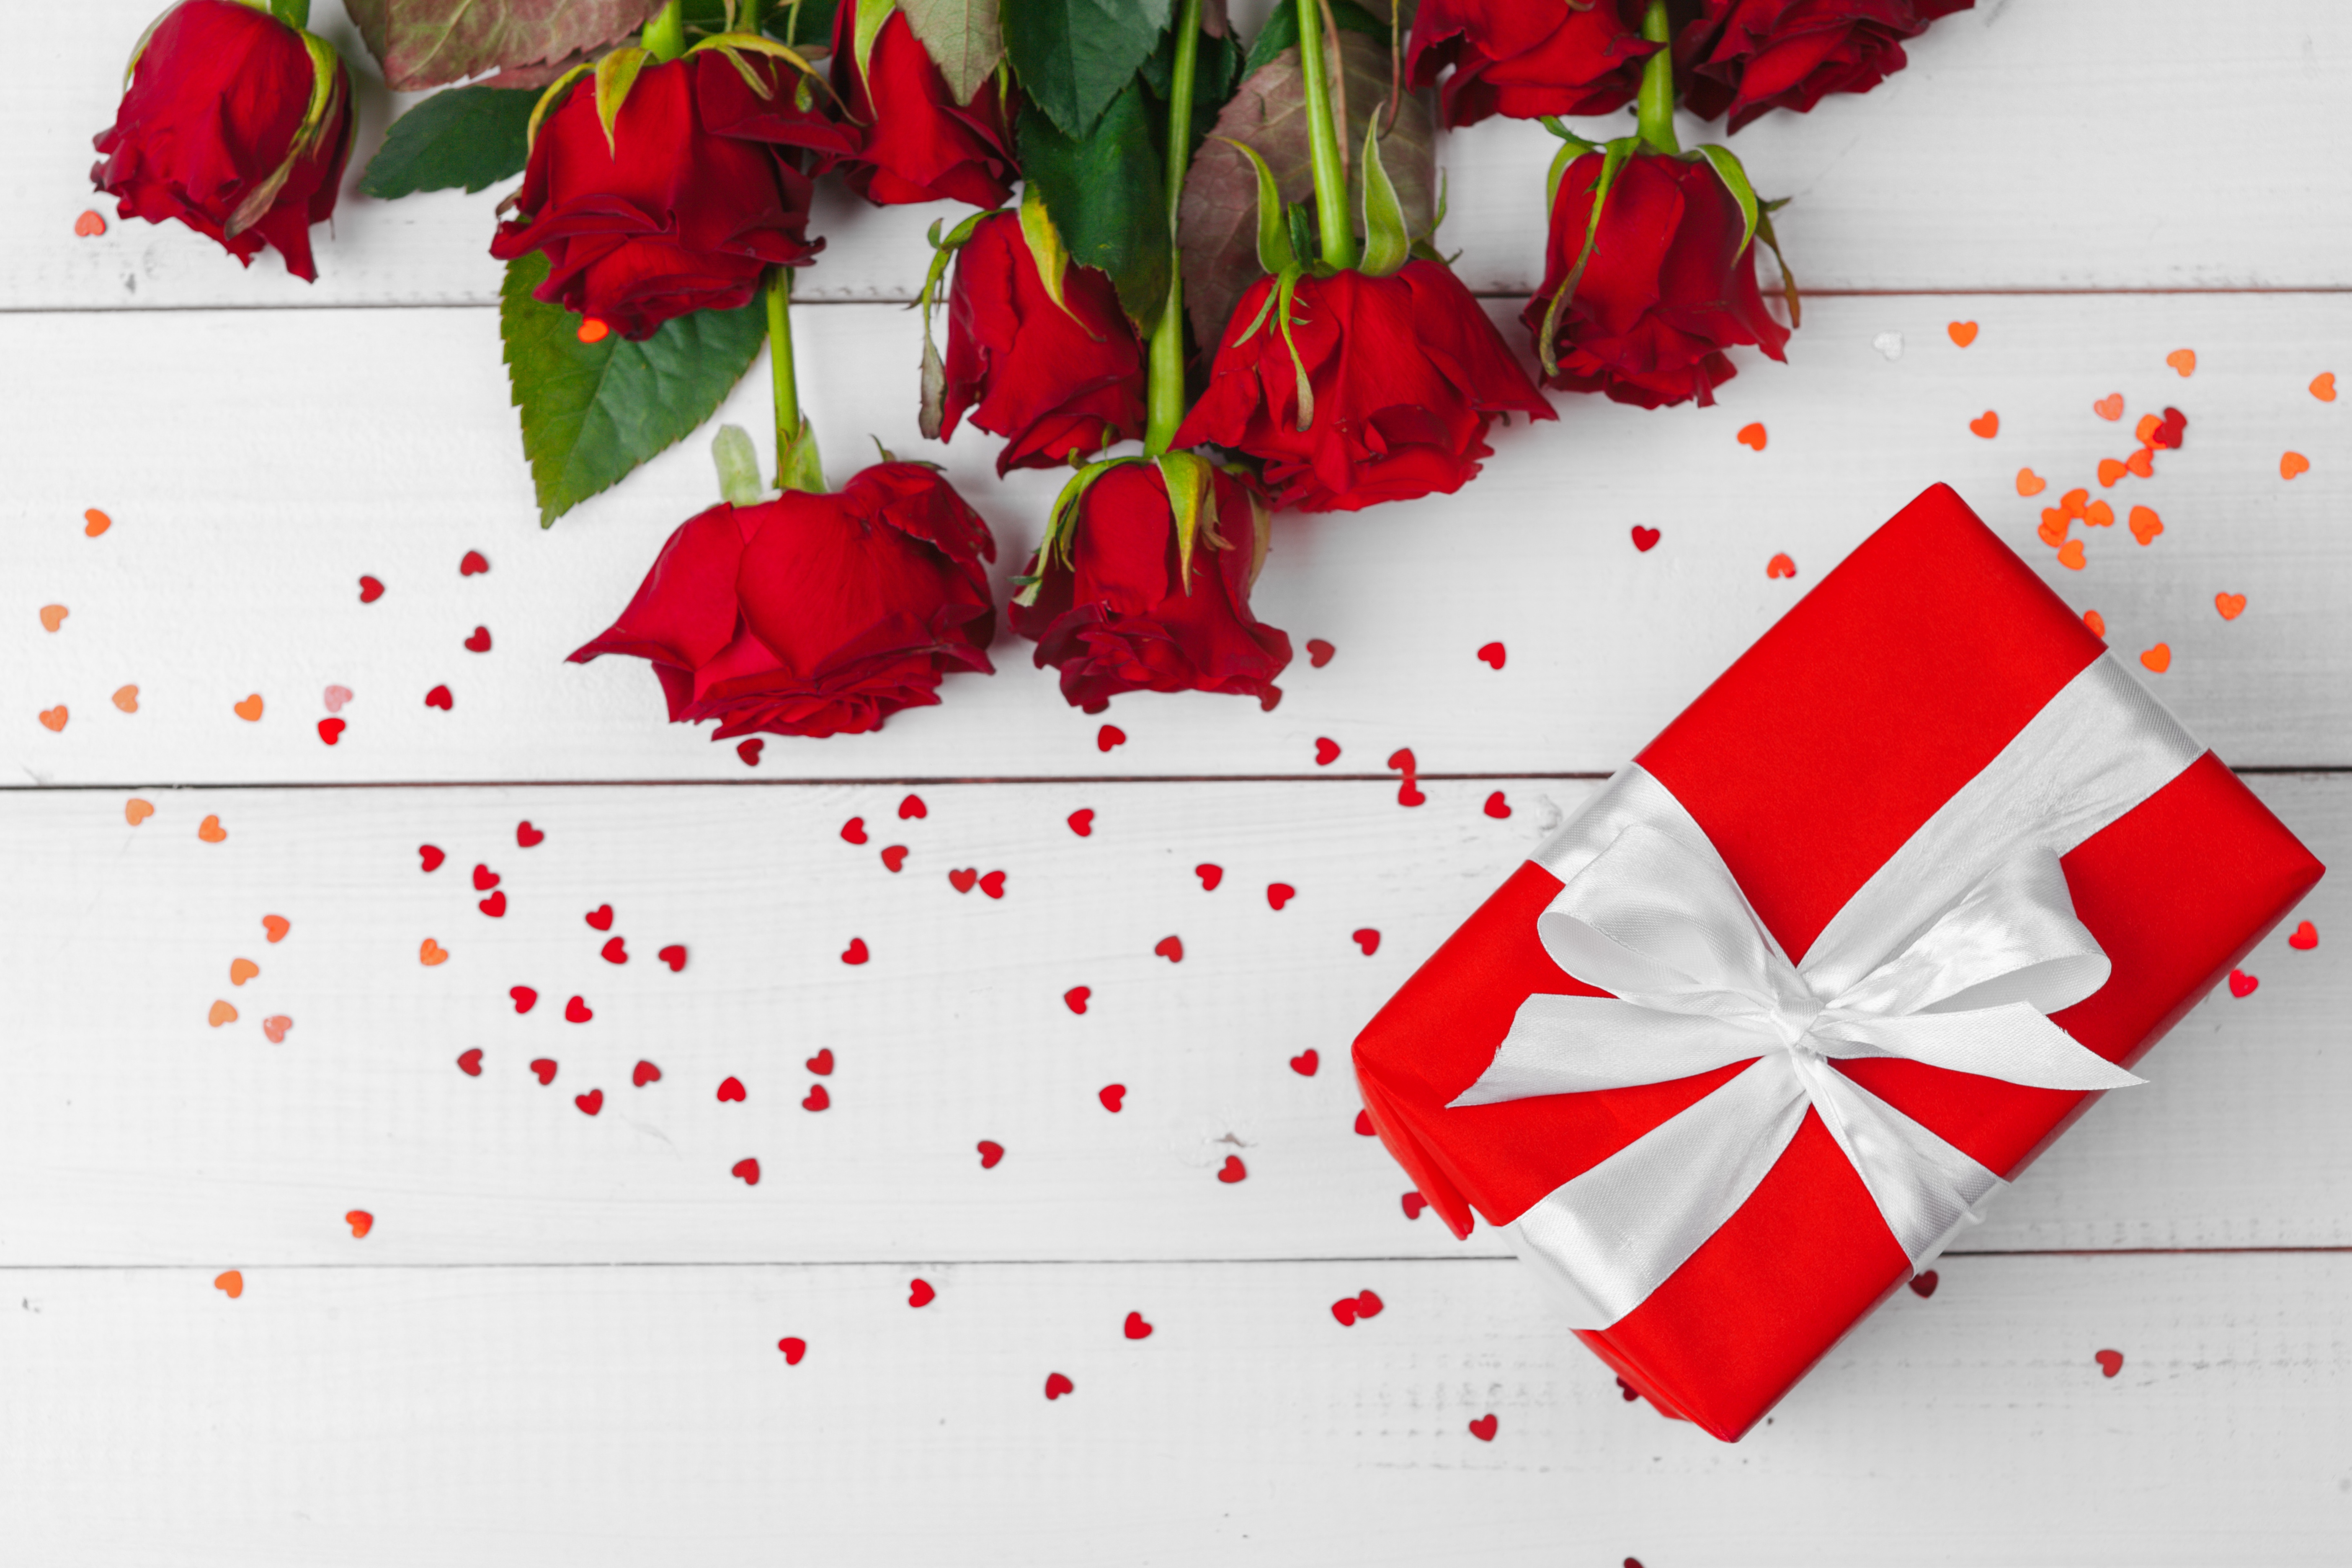 Скачать обои бесплатно Роза, Подарки, День Святого Валентина, Праздничные, Красный Цветок картинка на рабочий стол ПК